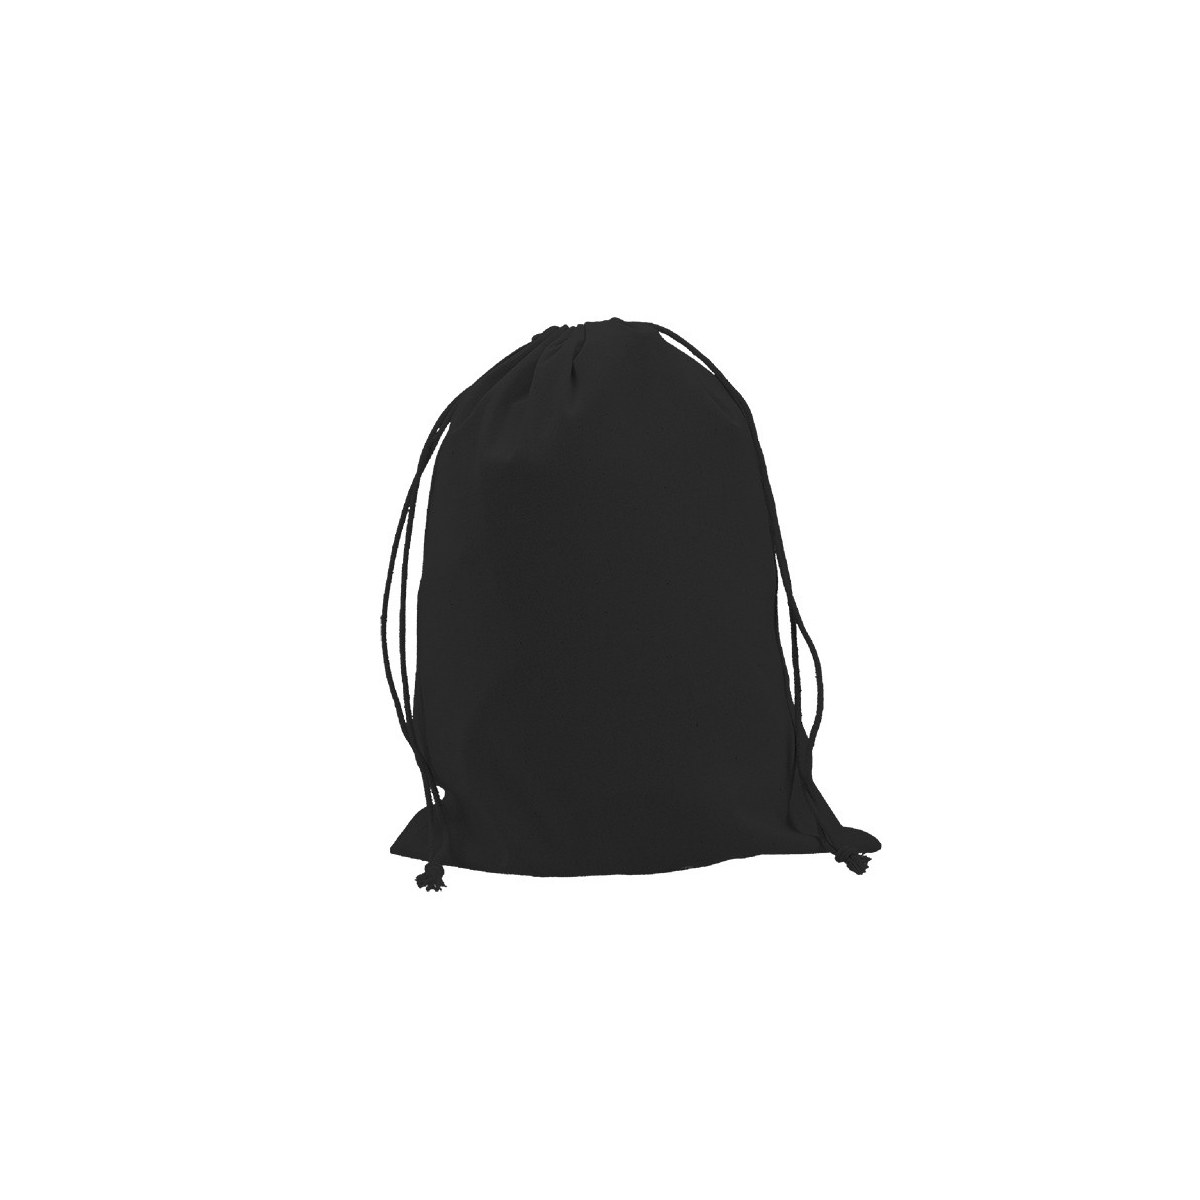 Saquito de Algodón negro 40x30 (cm)